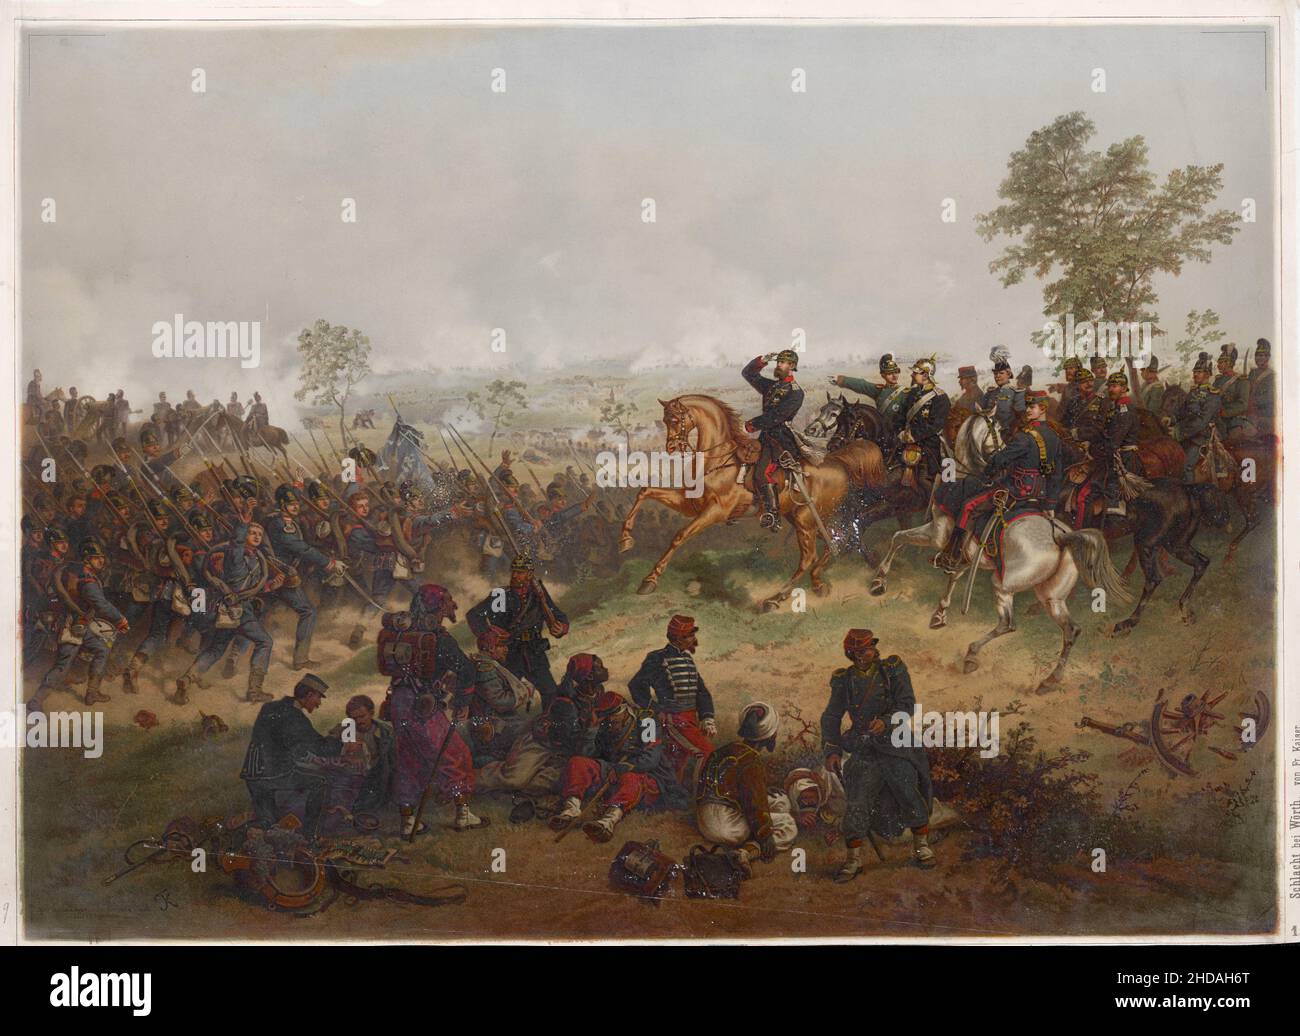 Gravure de la bataille de Wörth le 6 août 1870.1872 la bataille de Wörth, aussi connue sous le nom de la bataille de Reichshoffen ou de la bataille de Frœschwille Banque D'Images